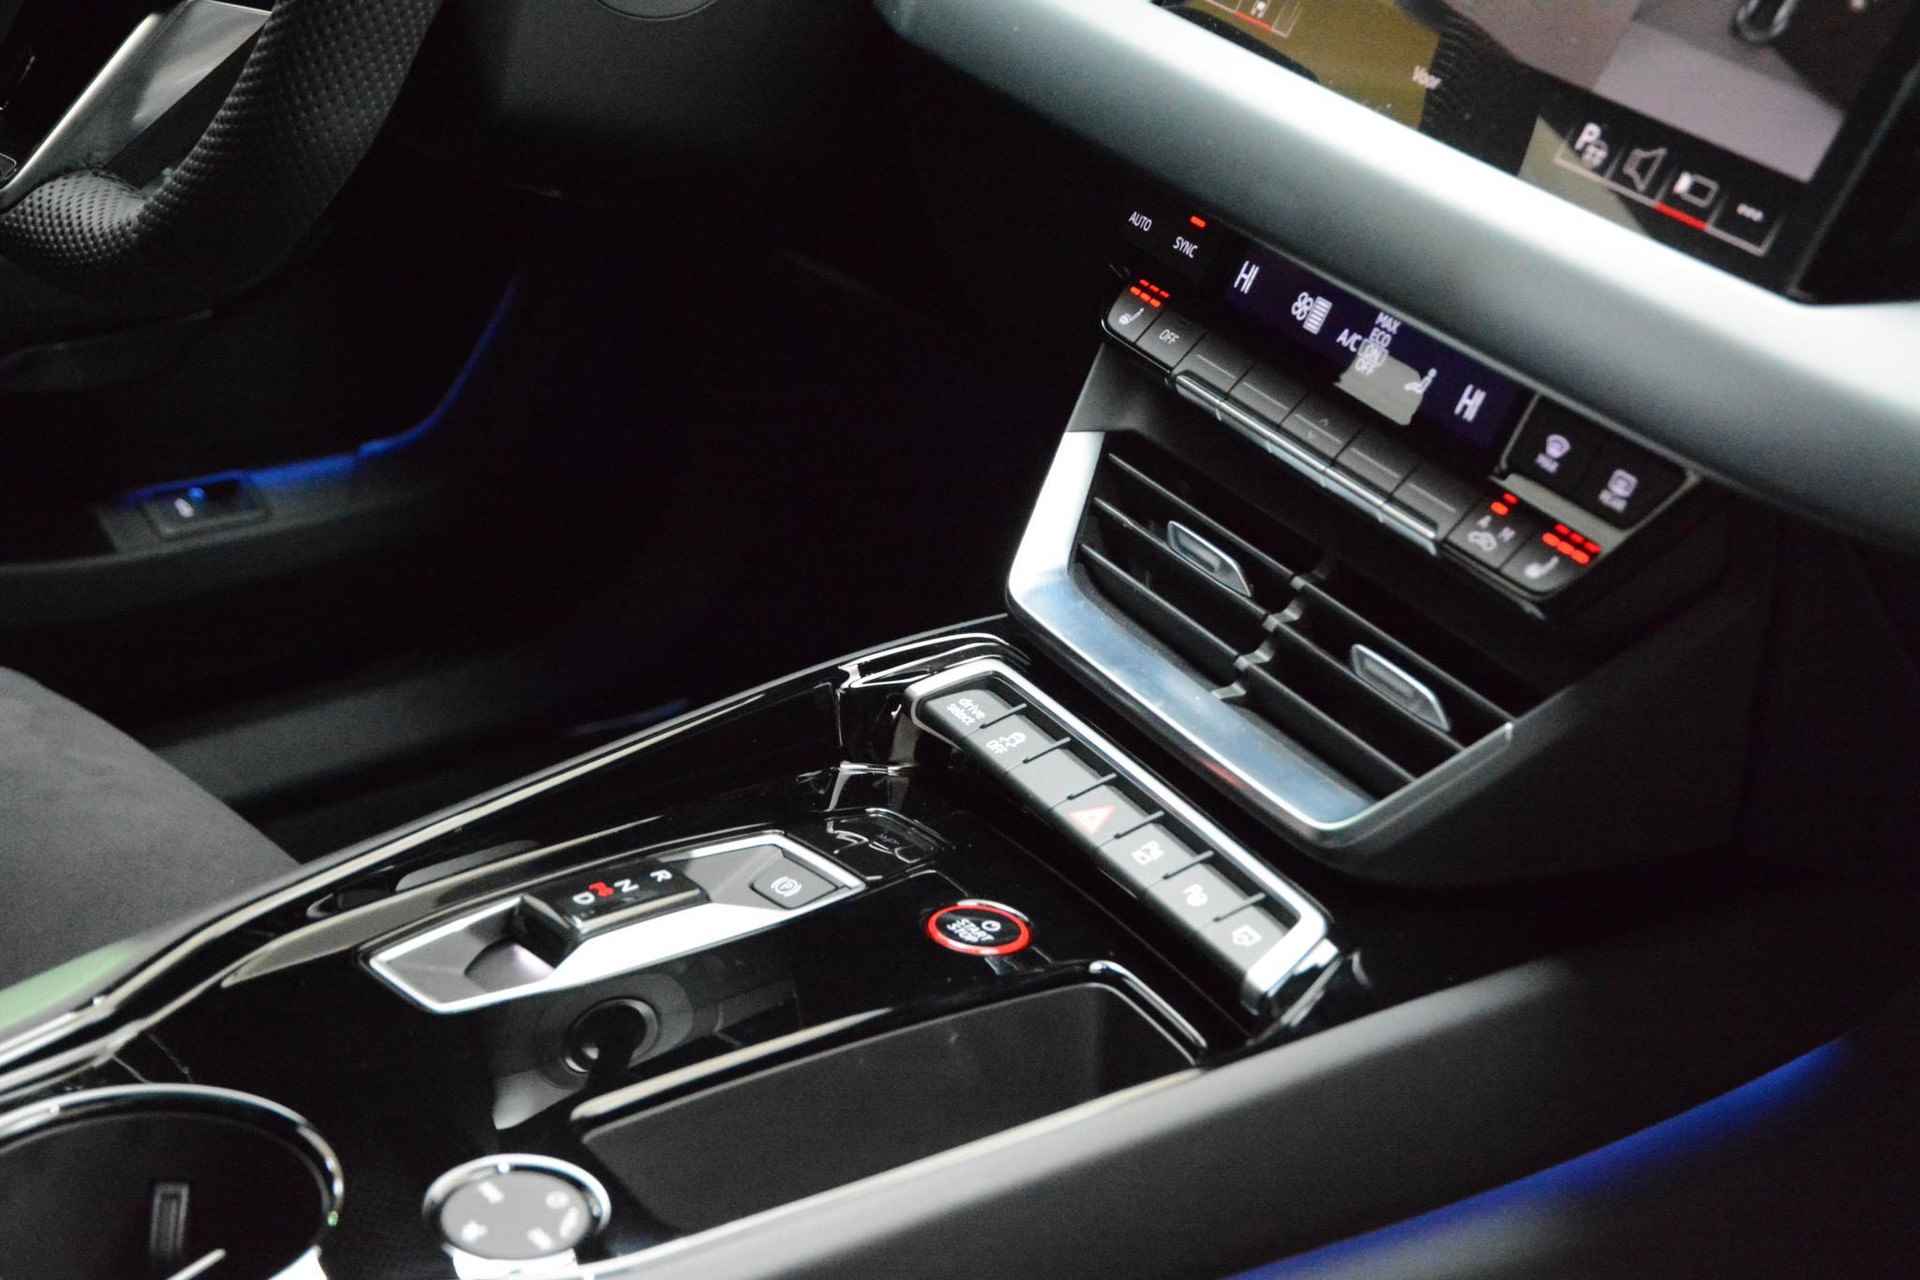 Audi e-tron GT GT Competition 93 kWh 476 PK | Nieuw | NU VAN € 143.900,00 VOOR € 123.900,00!!!! | UNIEKE KLEUR TIEFGRUN ENIGE IN NL!!! | Navigatie | Maxtrix-Laser koplampen | 360 camera | Autonome parkeerfunctie | Dynamische vierwielbesturing | Dodehoek detectie | Glazen panoramadak | Head-up display | Dynamiekpakket plus | Audi virtual cockpit plus | Stoelverwarming voor en achter | Lichtpakket plus ambient light | Optiekpakket zwart plus - 18/30